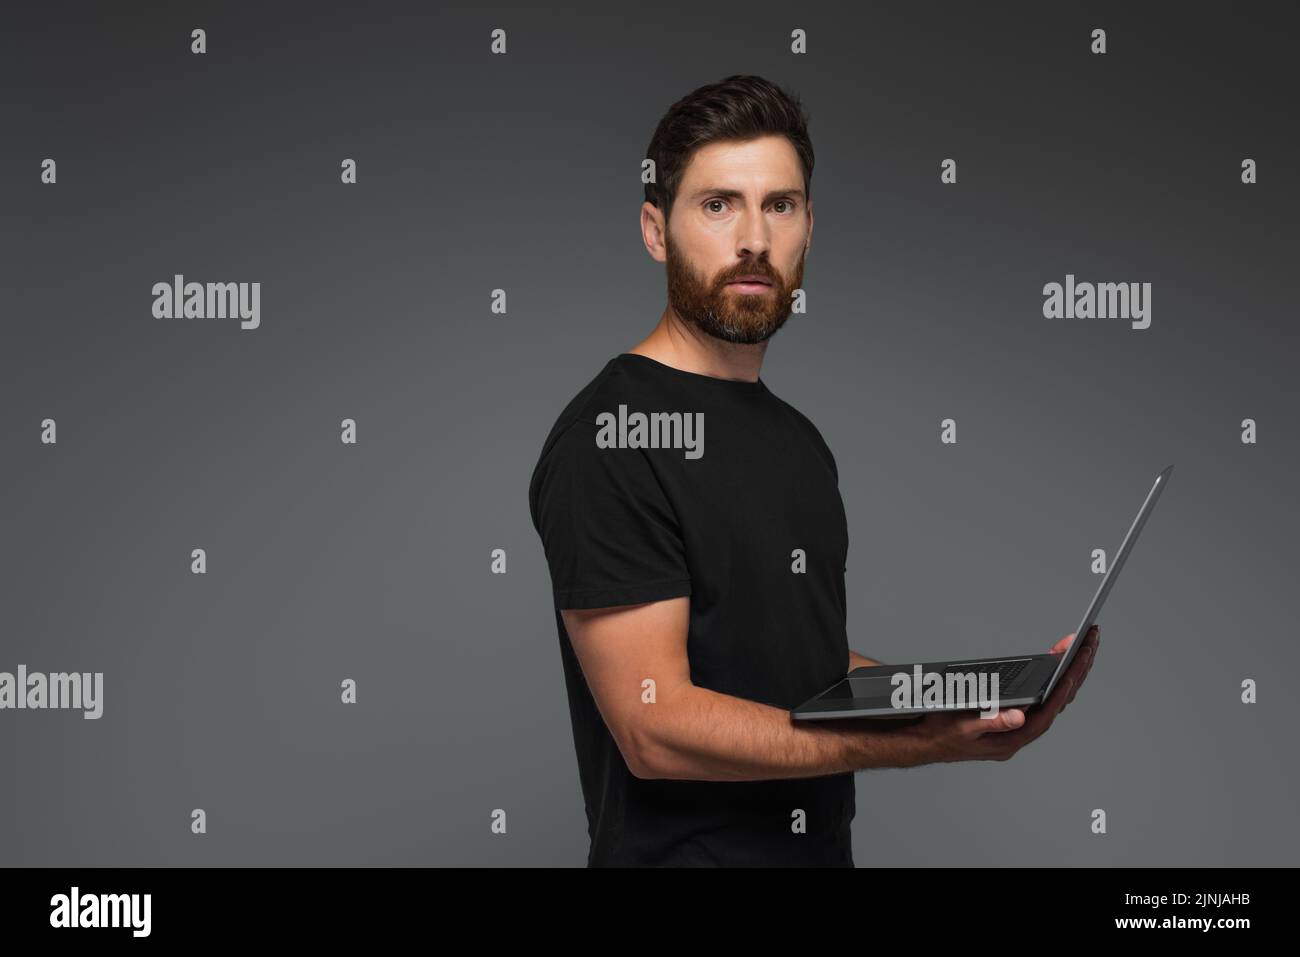 barbudo freelancer en negro camiseta portátil de sujeción aislado en gris, imagen de stock Foto de stock